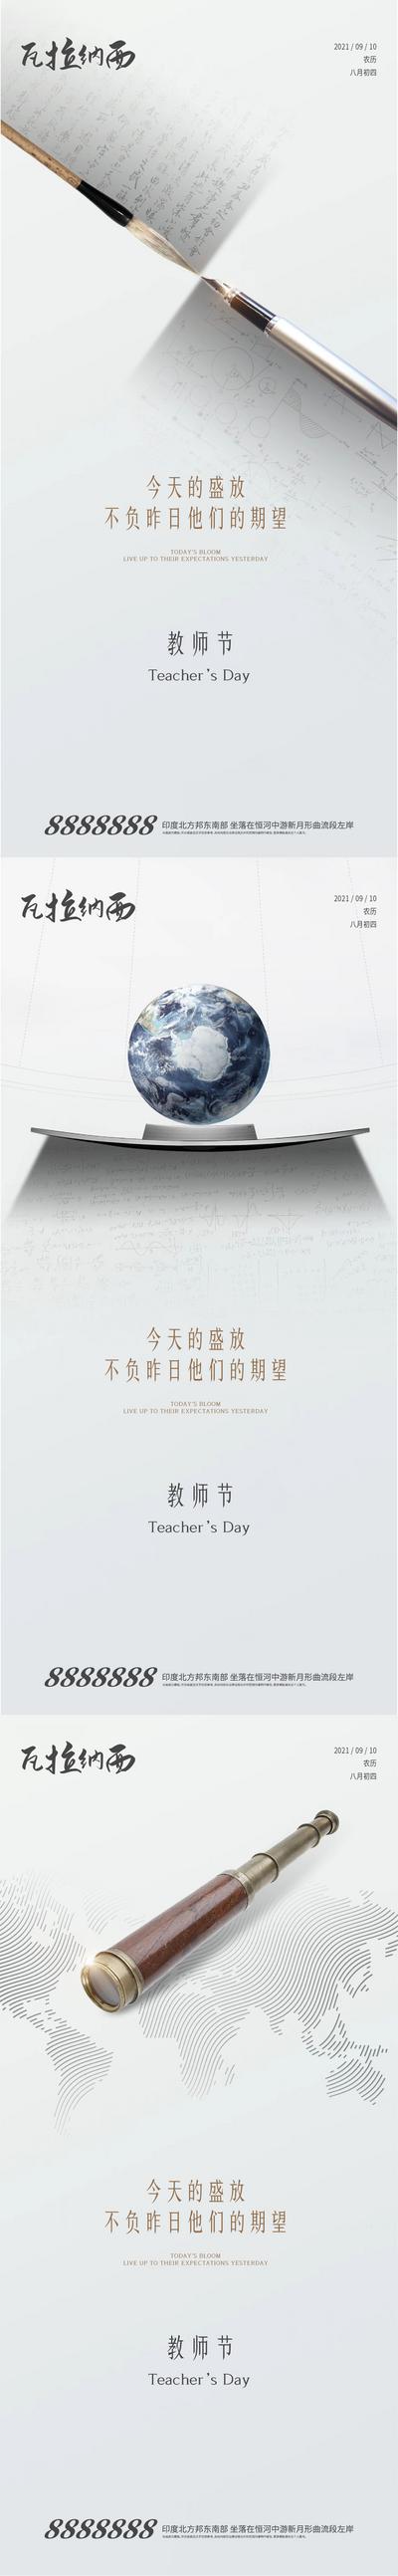 南门网 海报 房地产 教师节 公历节日 放大镜 地图 地球